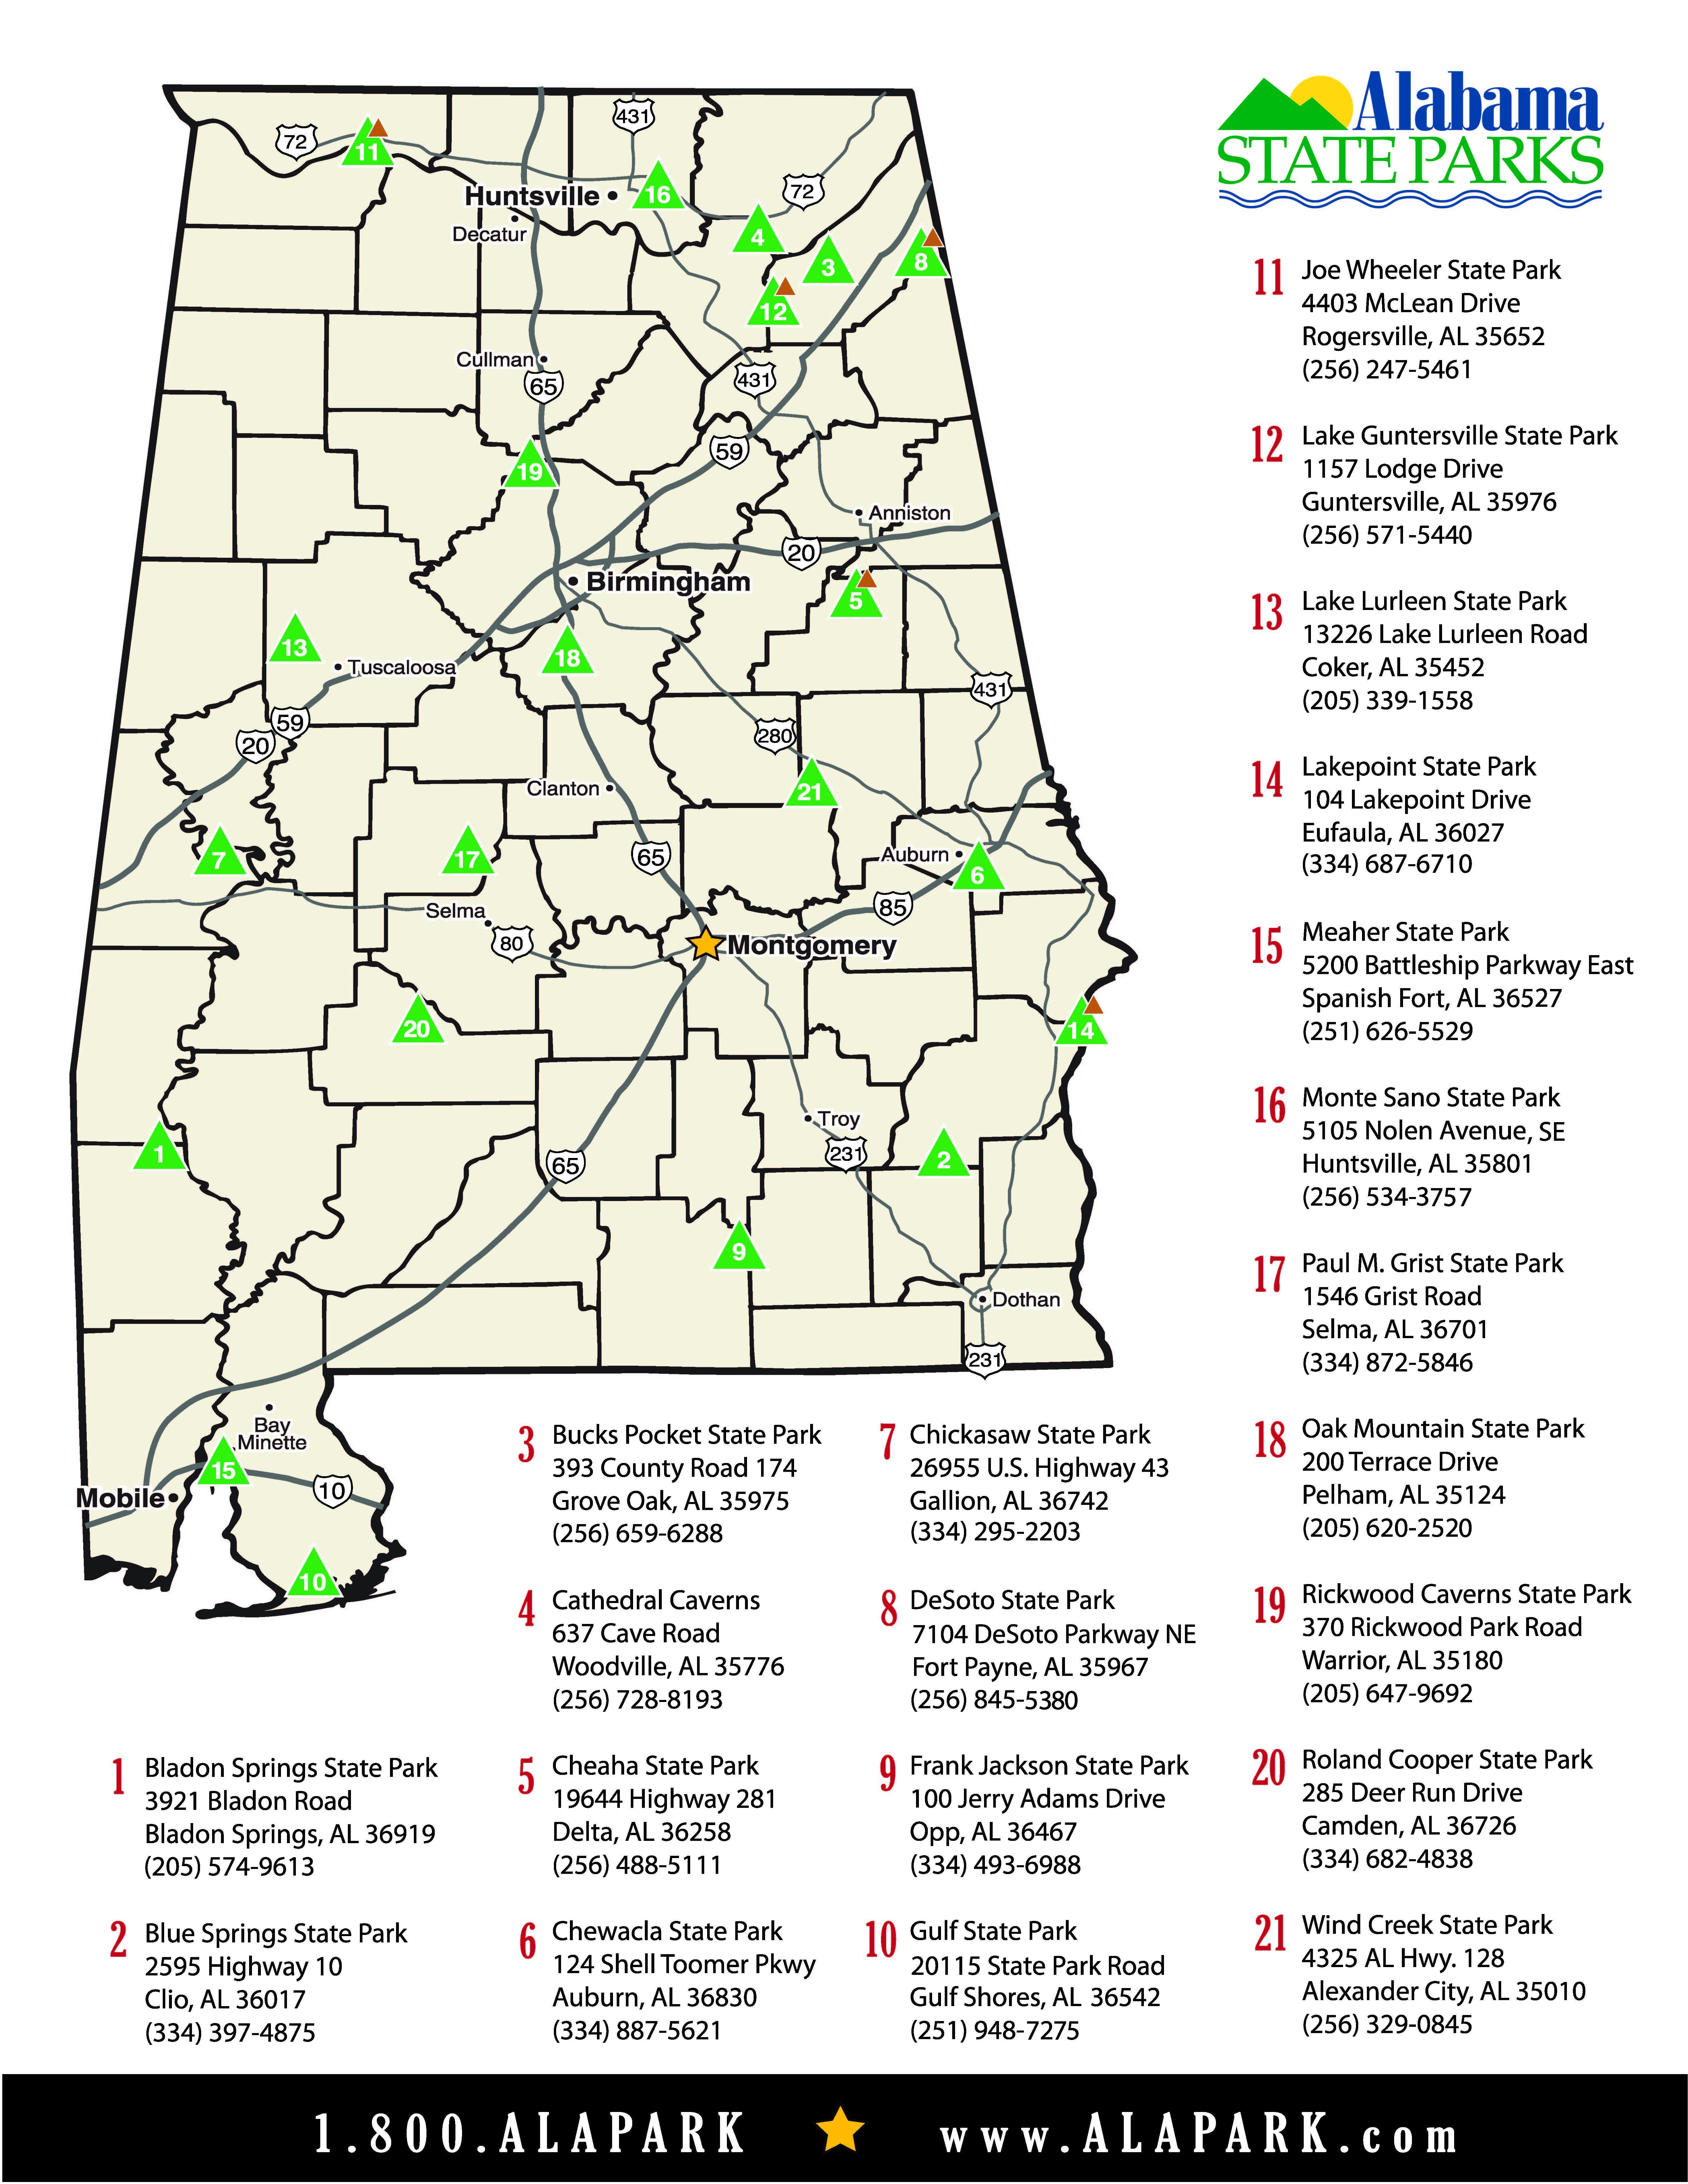 Alabama State Parks Staycation Destination Map